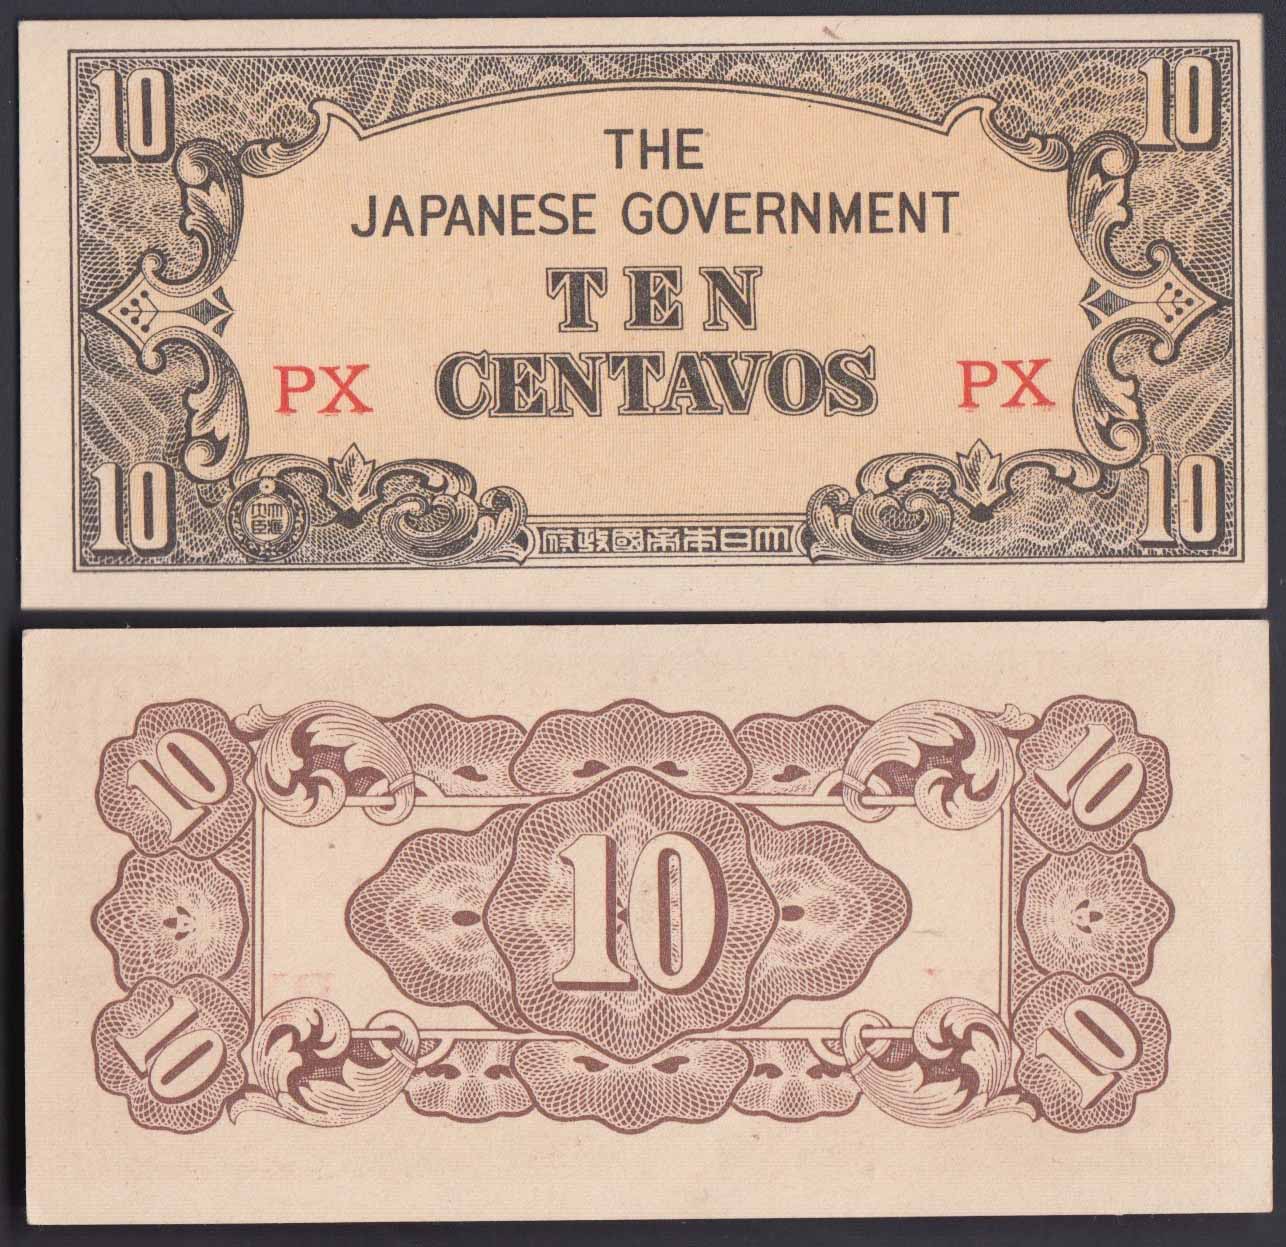 FILIPPINE 10 Centavos 1942 Fdc